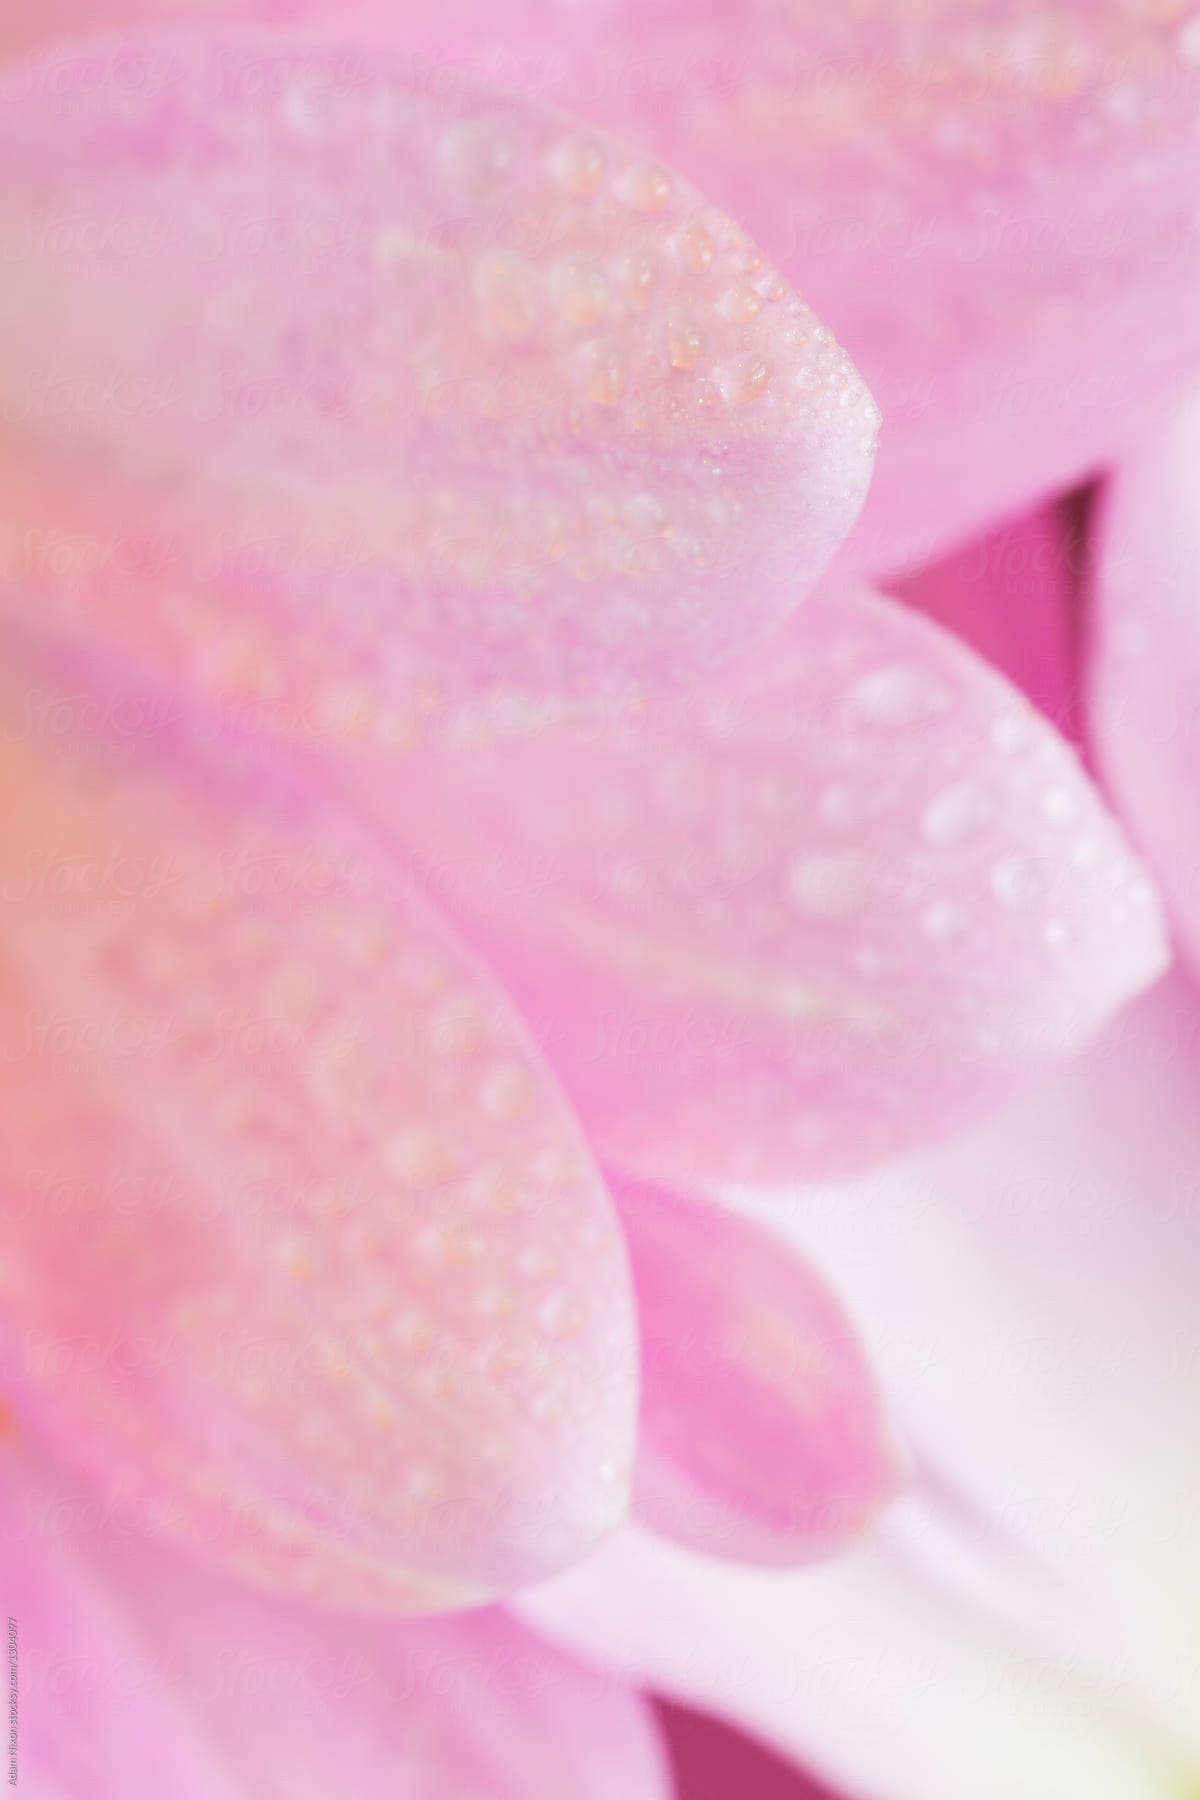 Water drops on pink daisy petals, macro